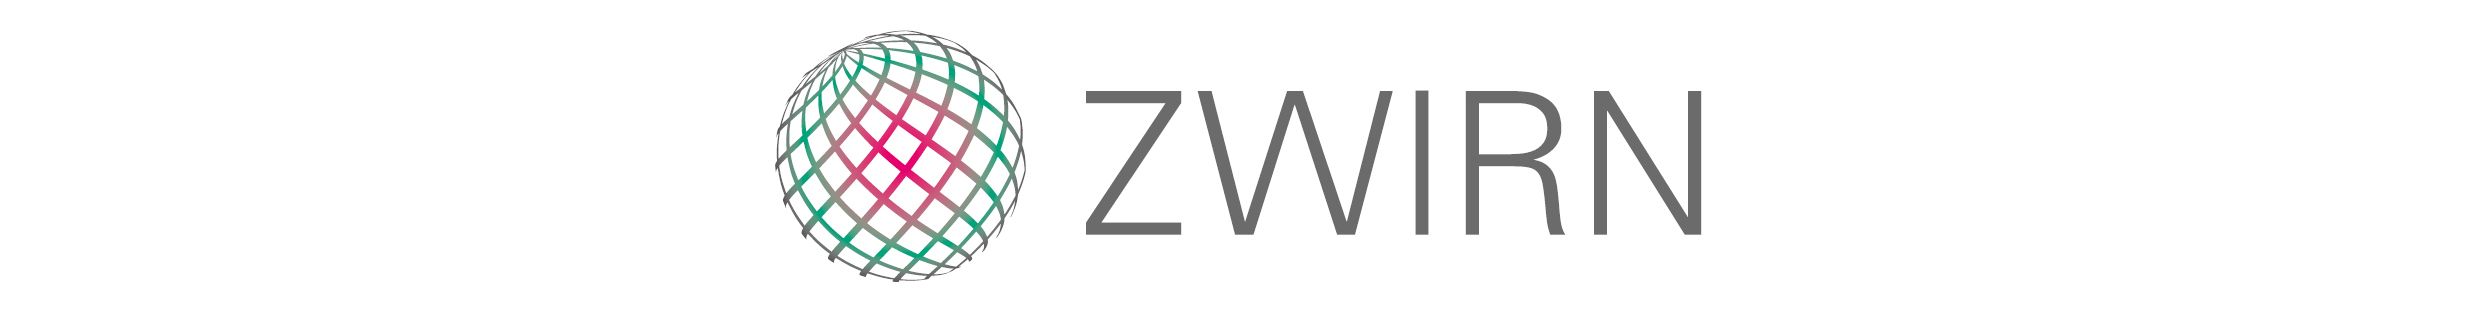 ZWIRN banner mitte